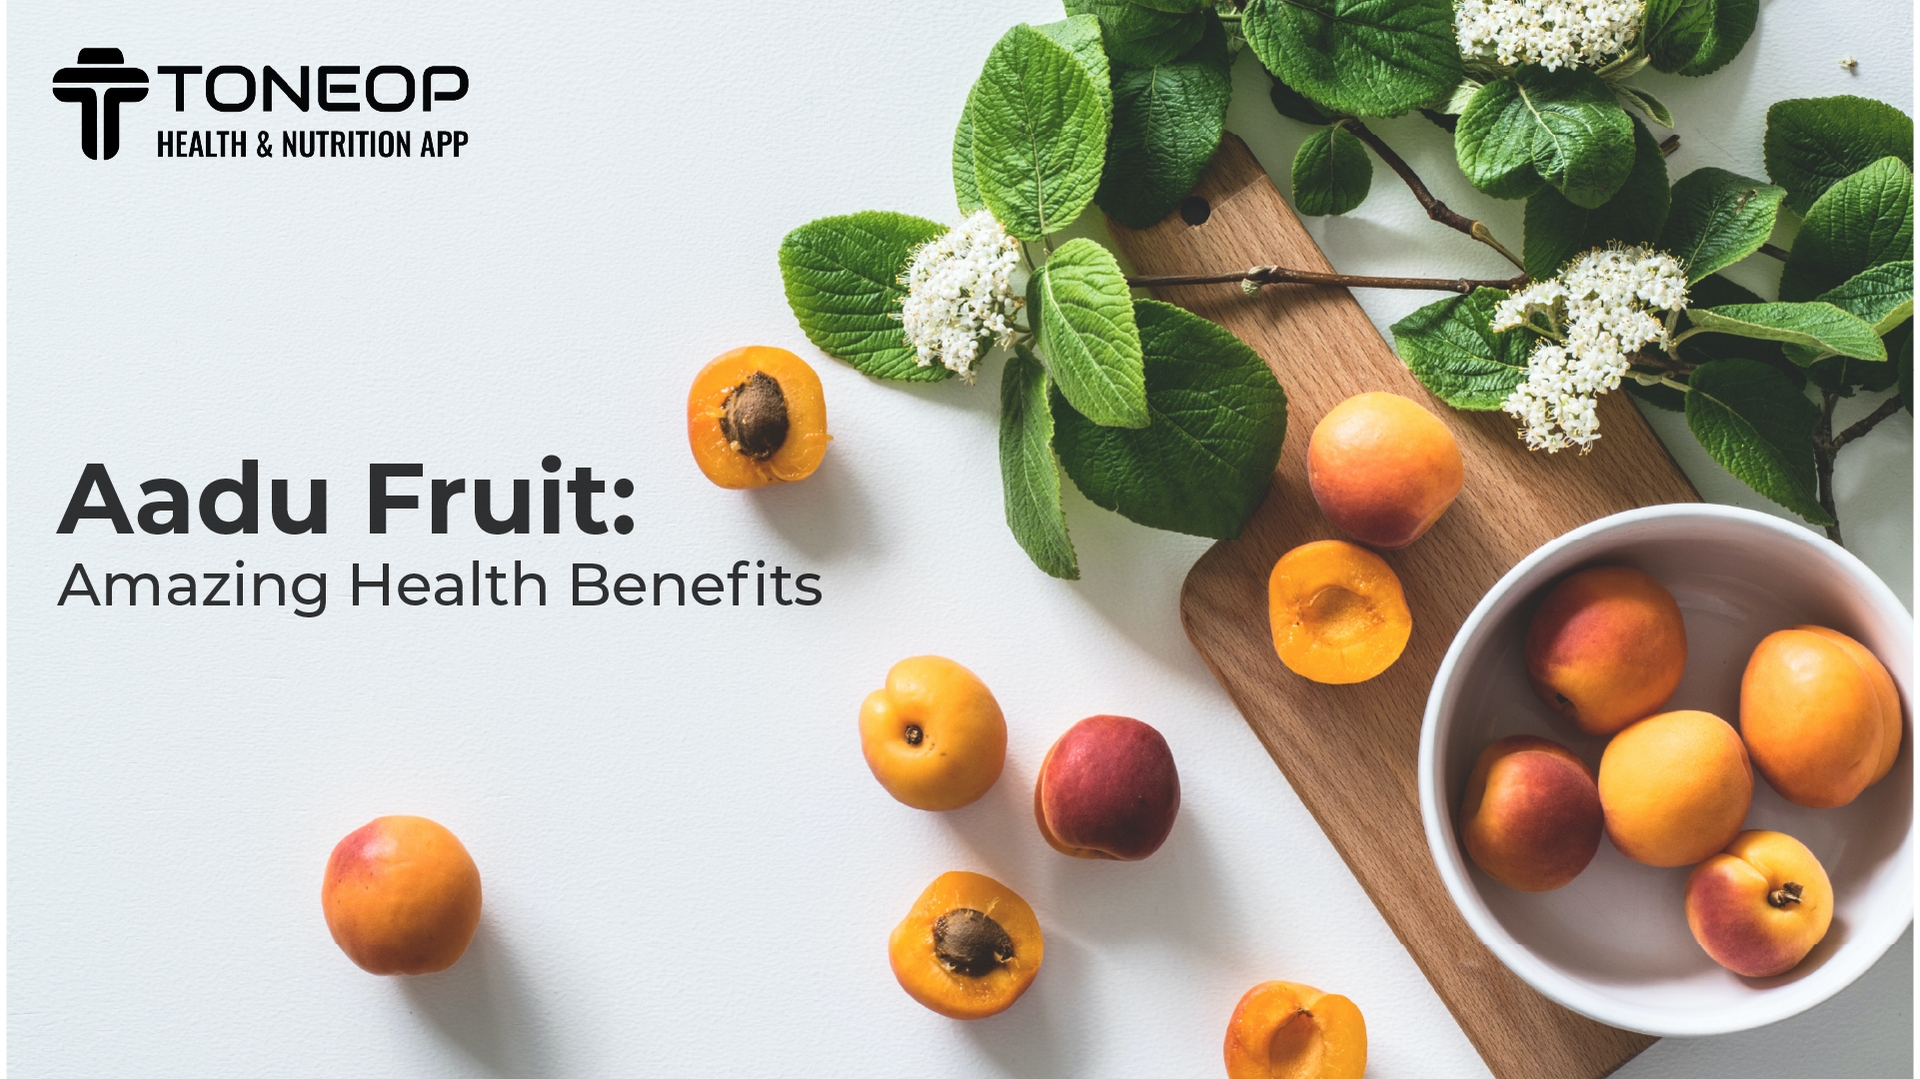 Aadu Fruit: Amazing Health Benefits